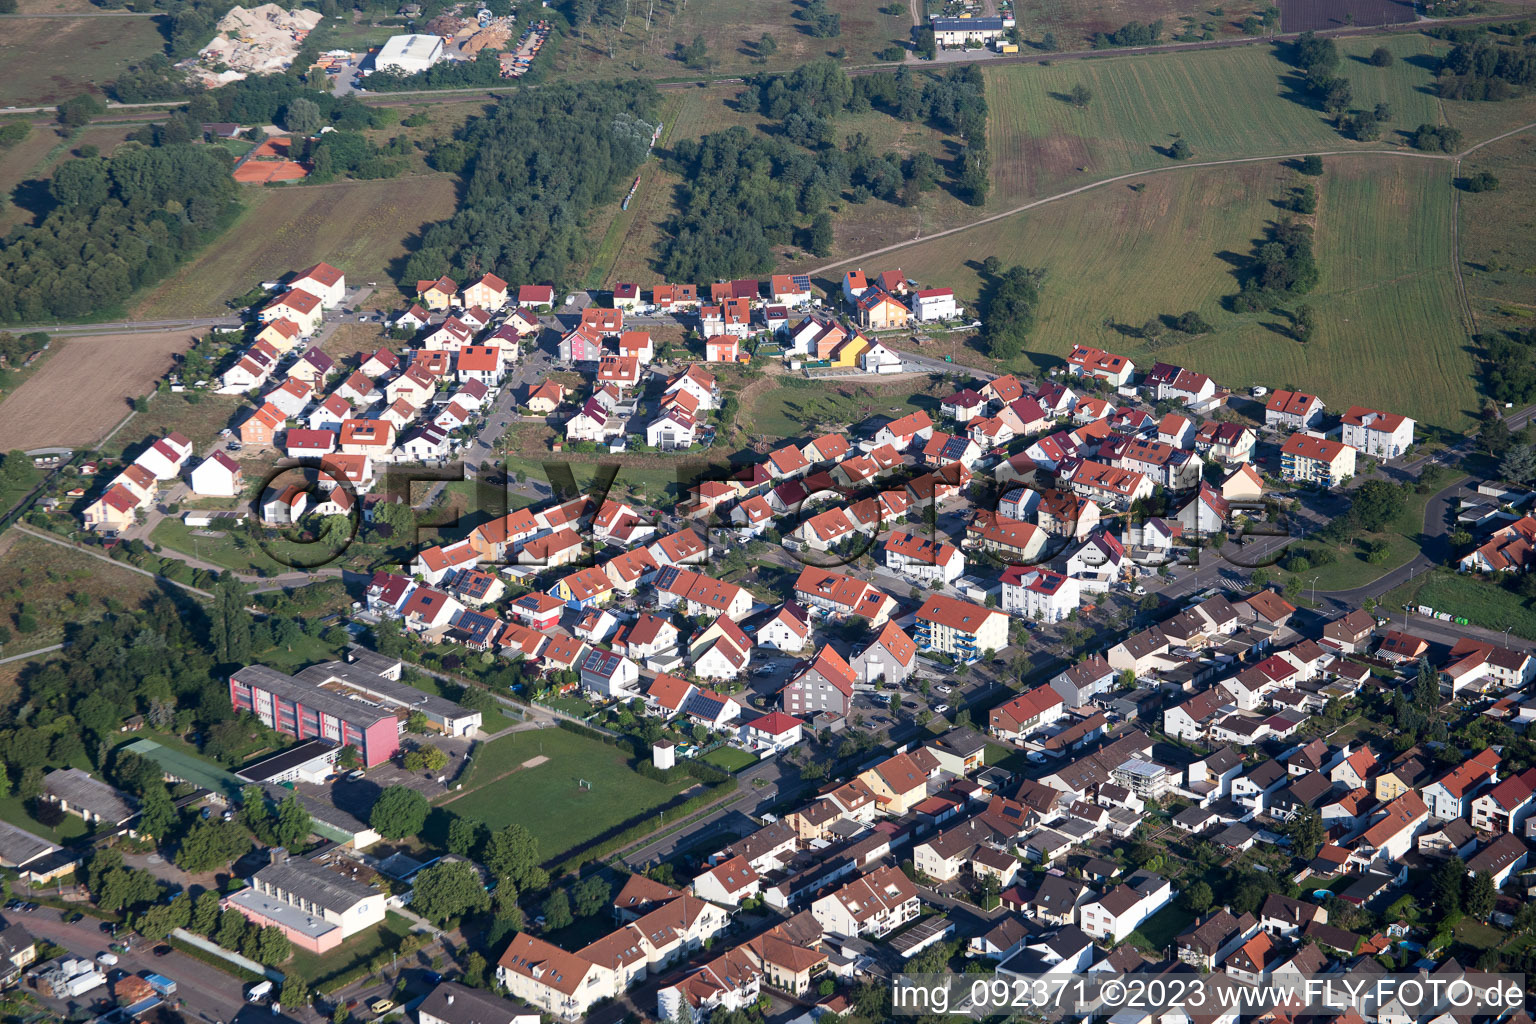 Wiesental im Bundesland Baden-Württemberg, Deutschland aus der Drohnenperspektive